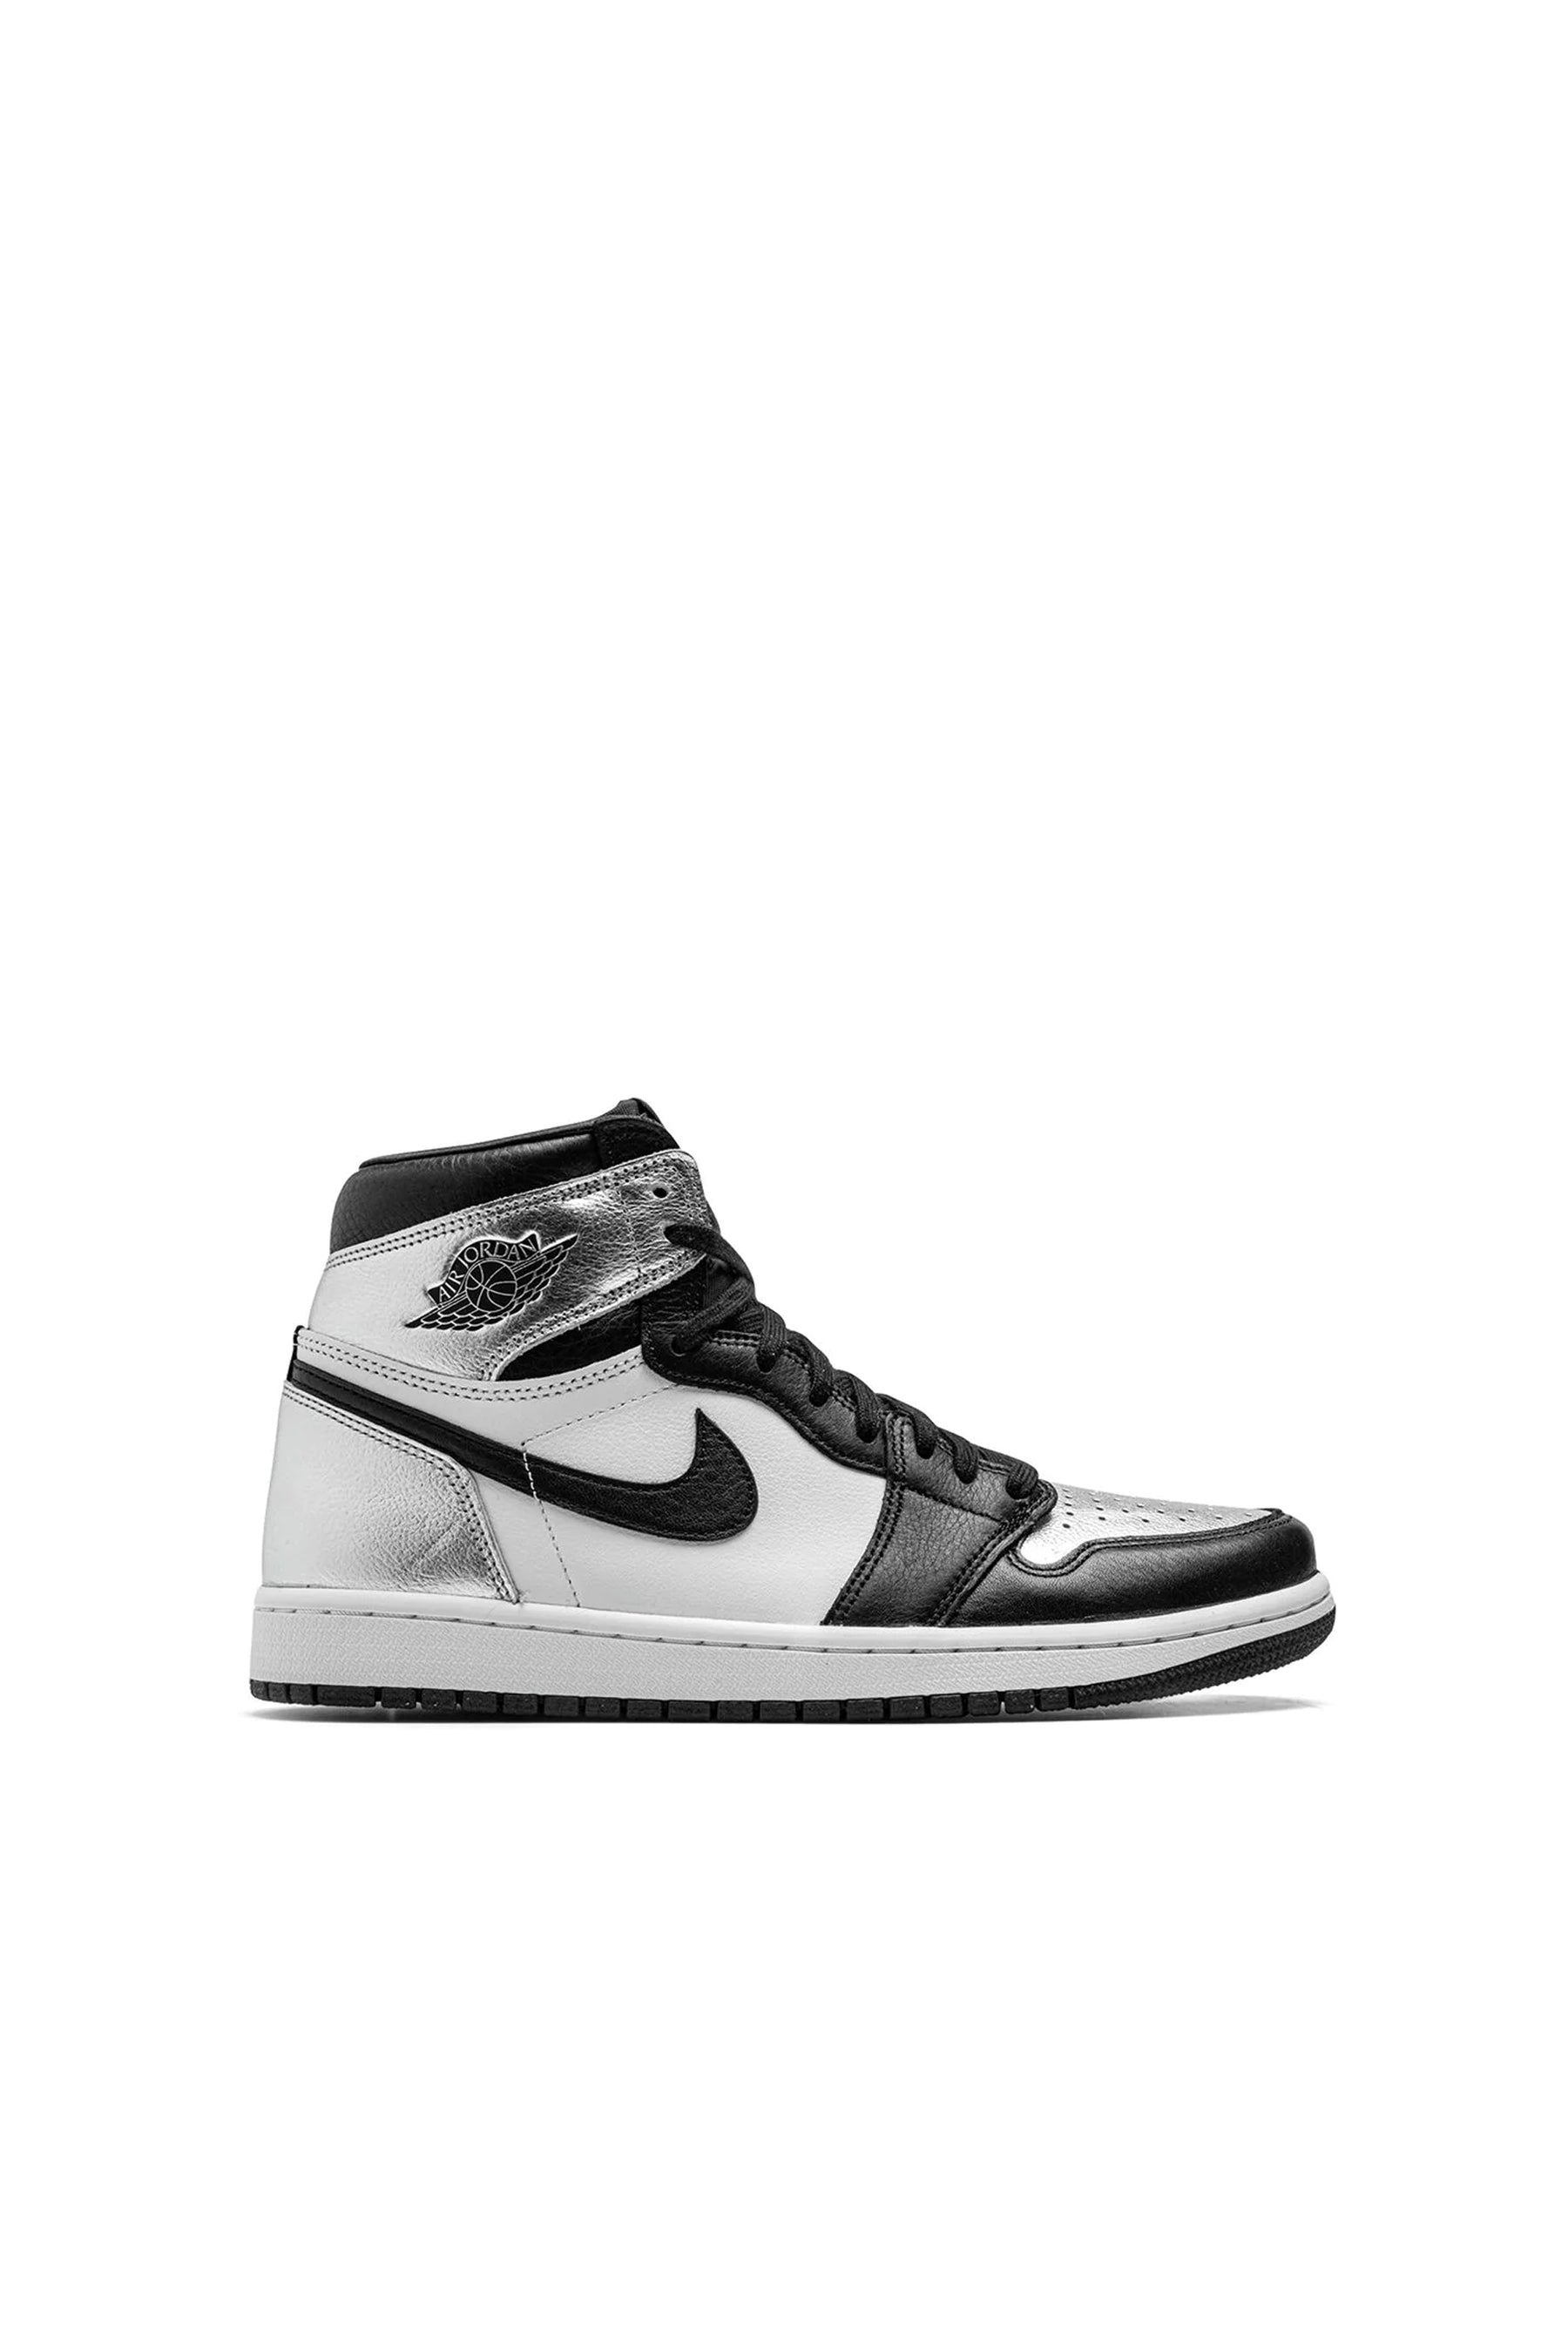 Air Jordan 1 High sneakers